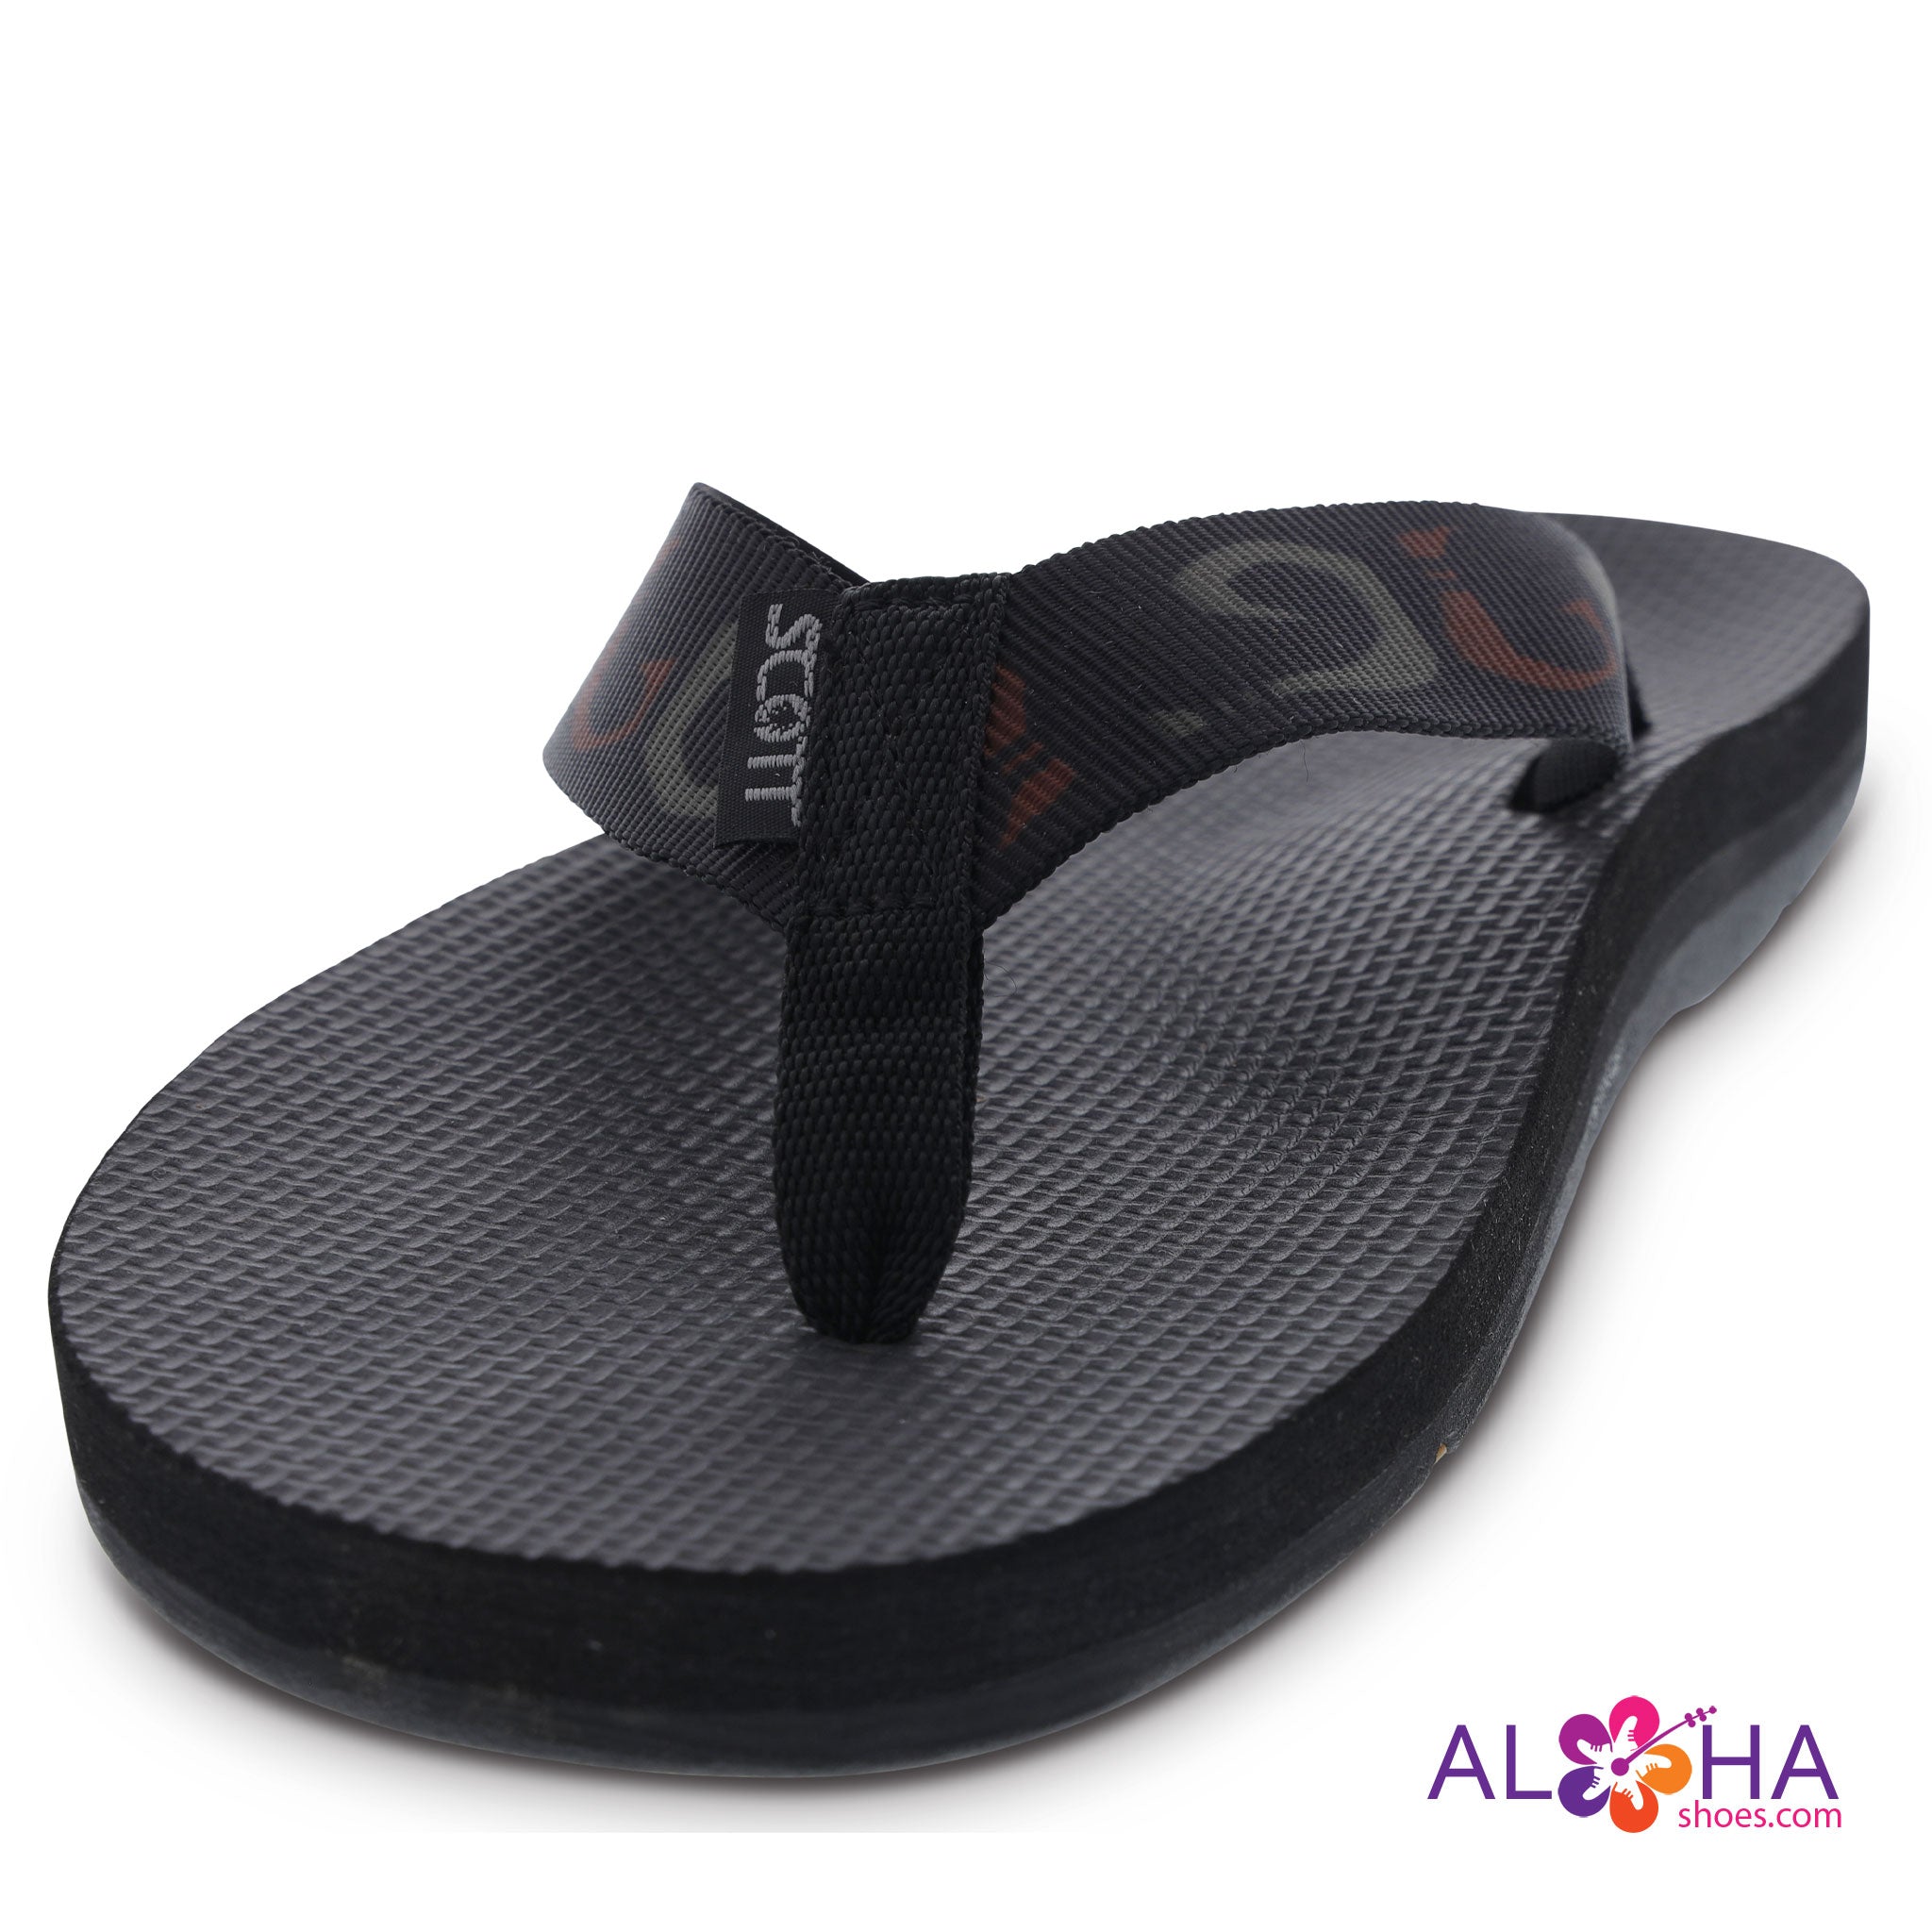 best flip flops for hawaii